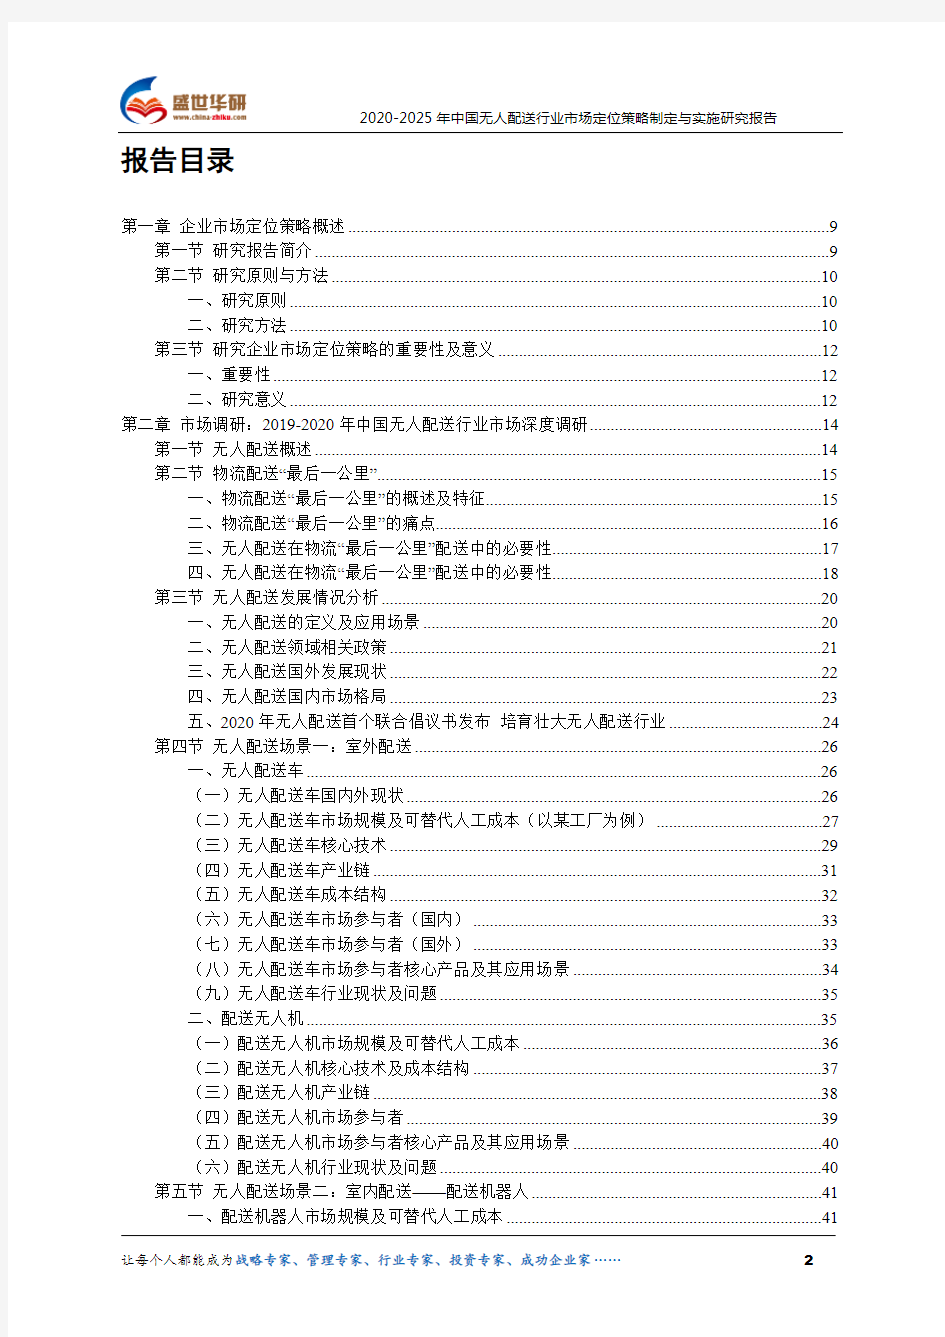 【完整版】2020-2025年中国无人配送行业市场定位策略制定与实施研究报告